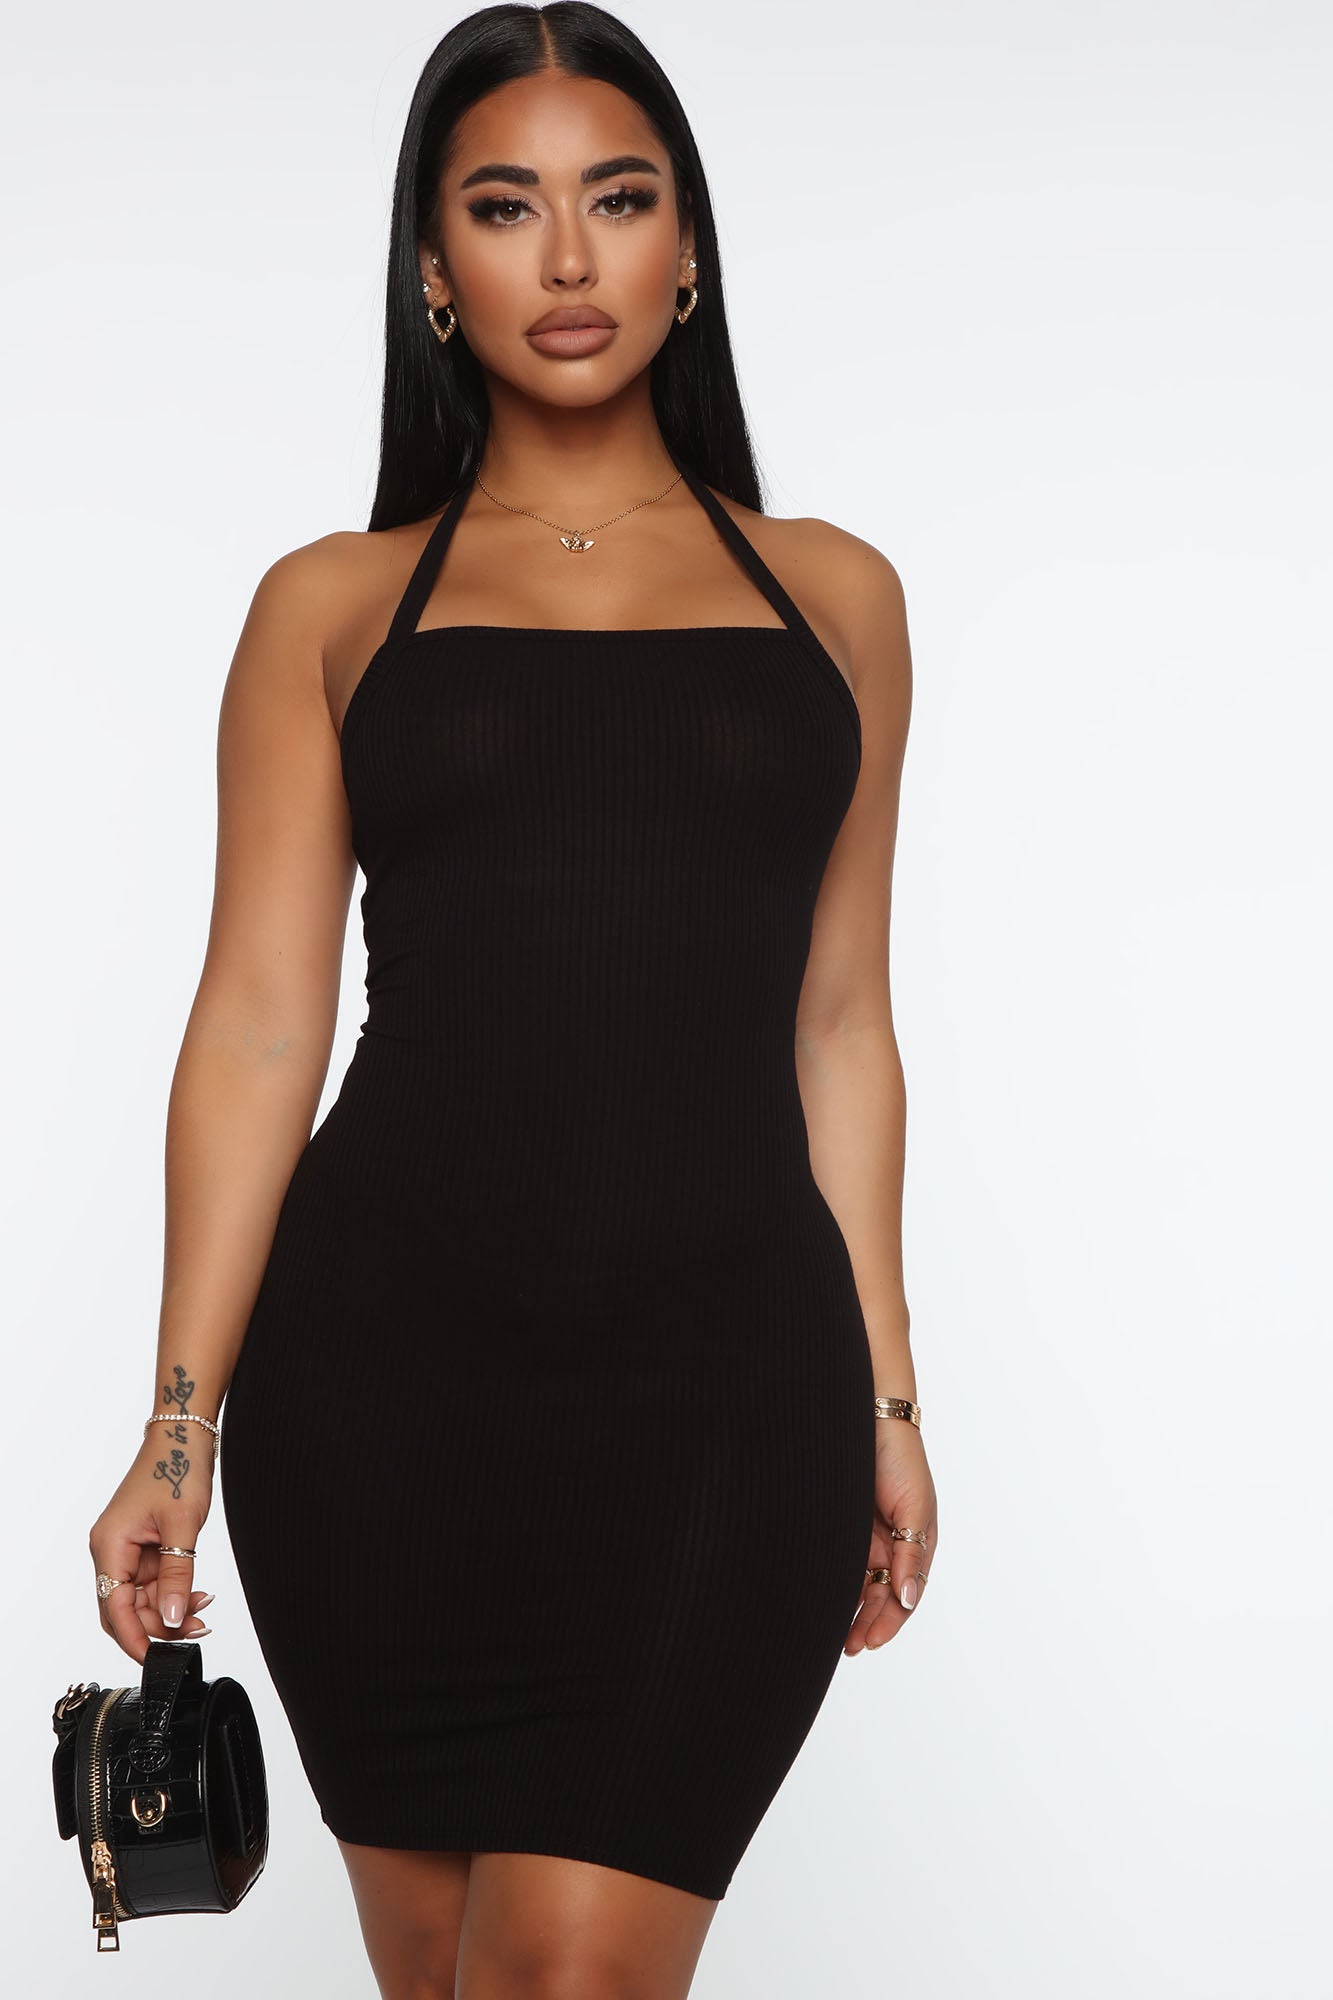 Buy HALTER NECK ELEGANT BLACK SHORT BODYCON DRESS for Women Online in India